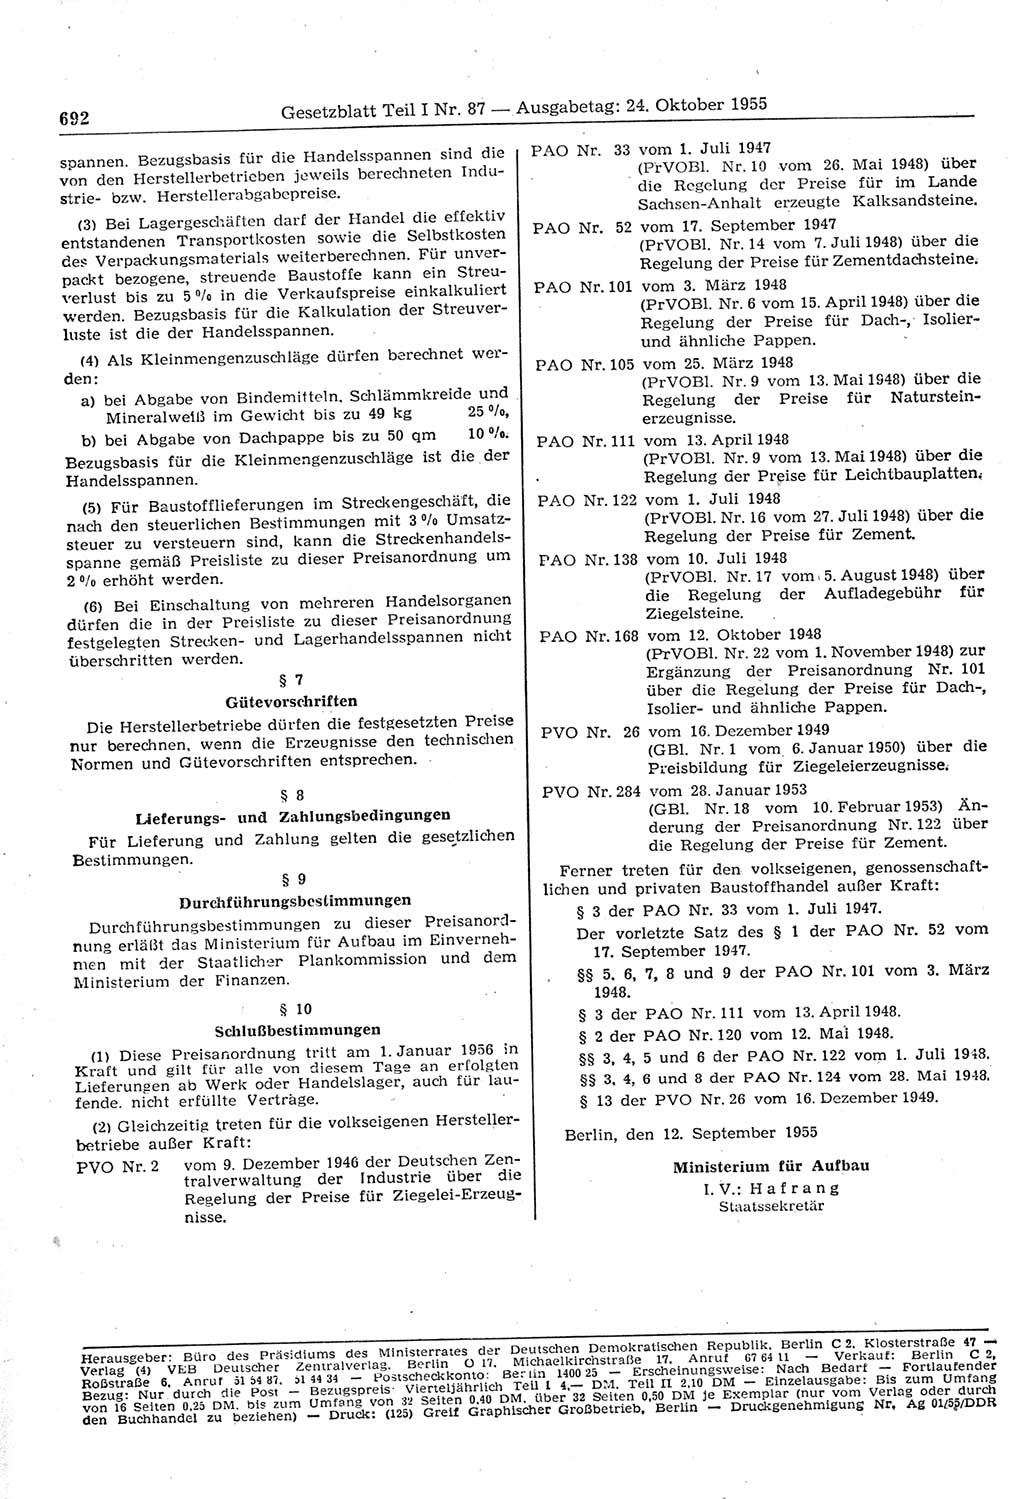 Gesetzblatt (GBl.) der Deutschen Demokratischen Republik (DDR) Teil Ⅰ 1955, Seite 692 (GBl. DDR Ⅰ 1955, S. 692)